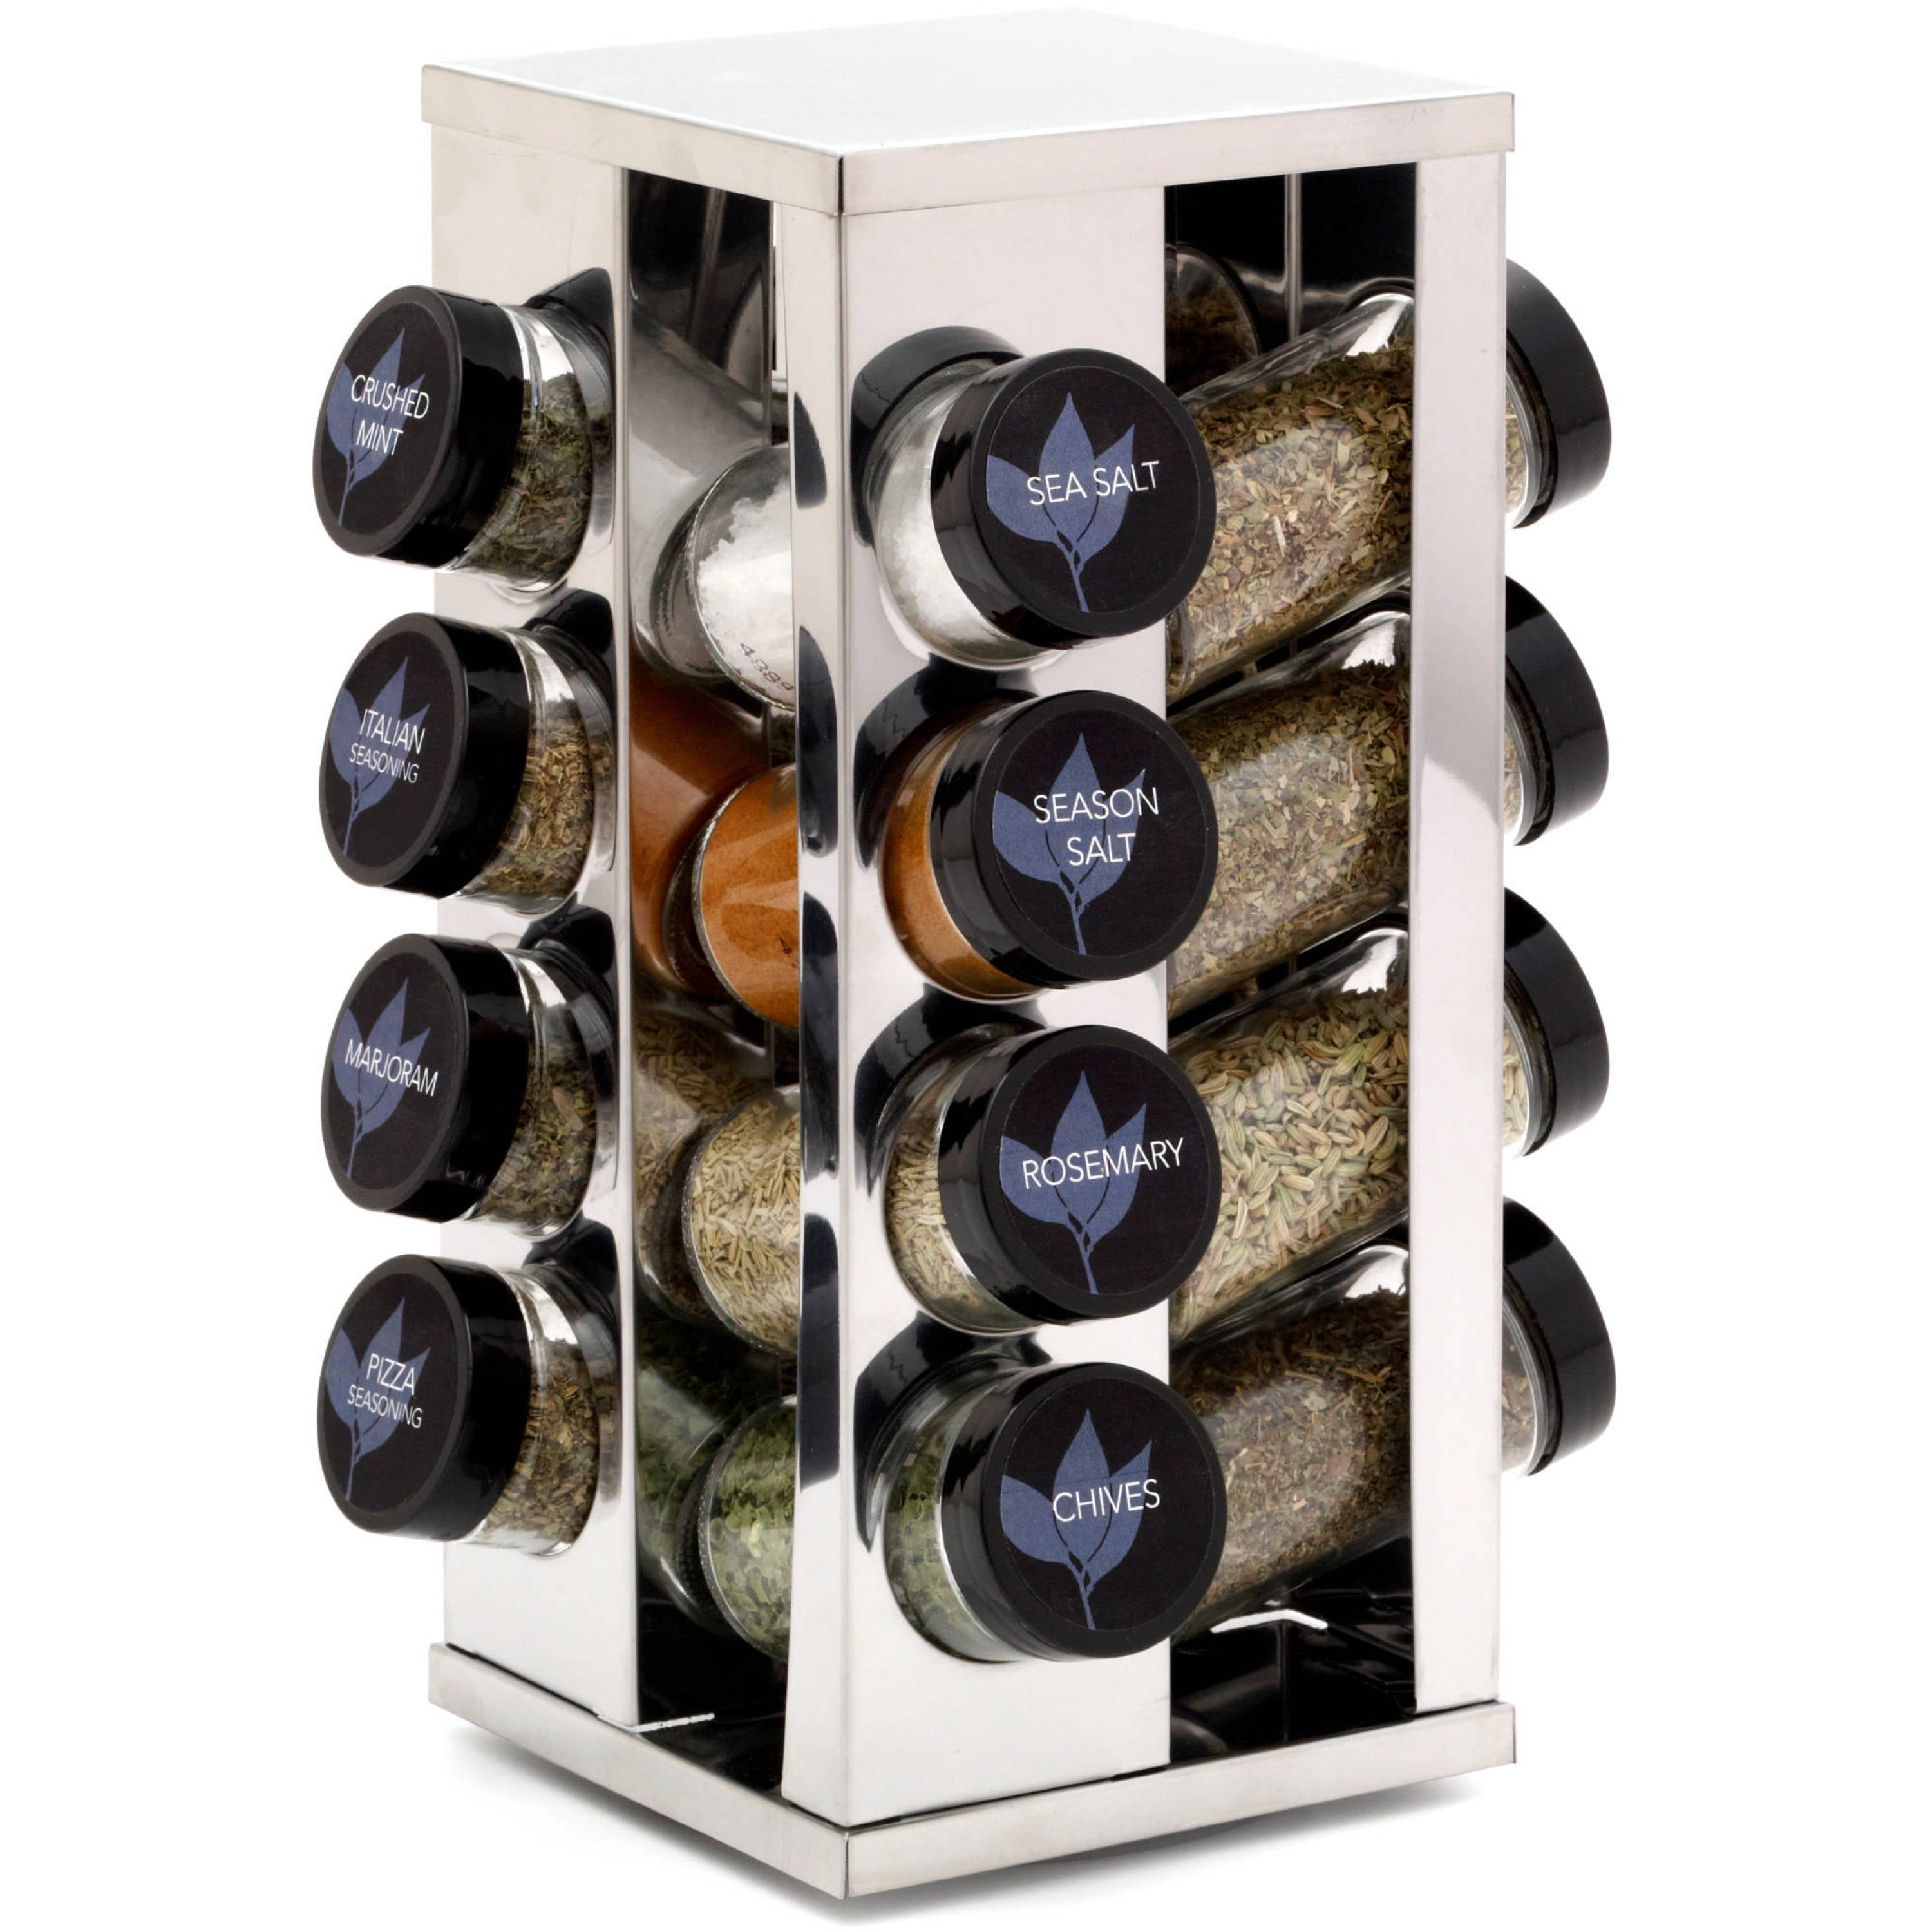 Kamenstein 5134680 Warner 16 Jar Revolving Countertop Spice Rack Organizer for sale online